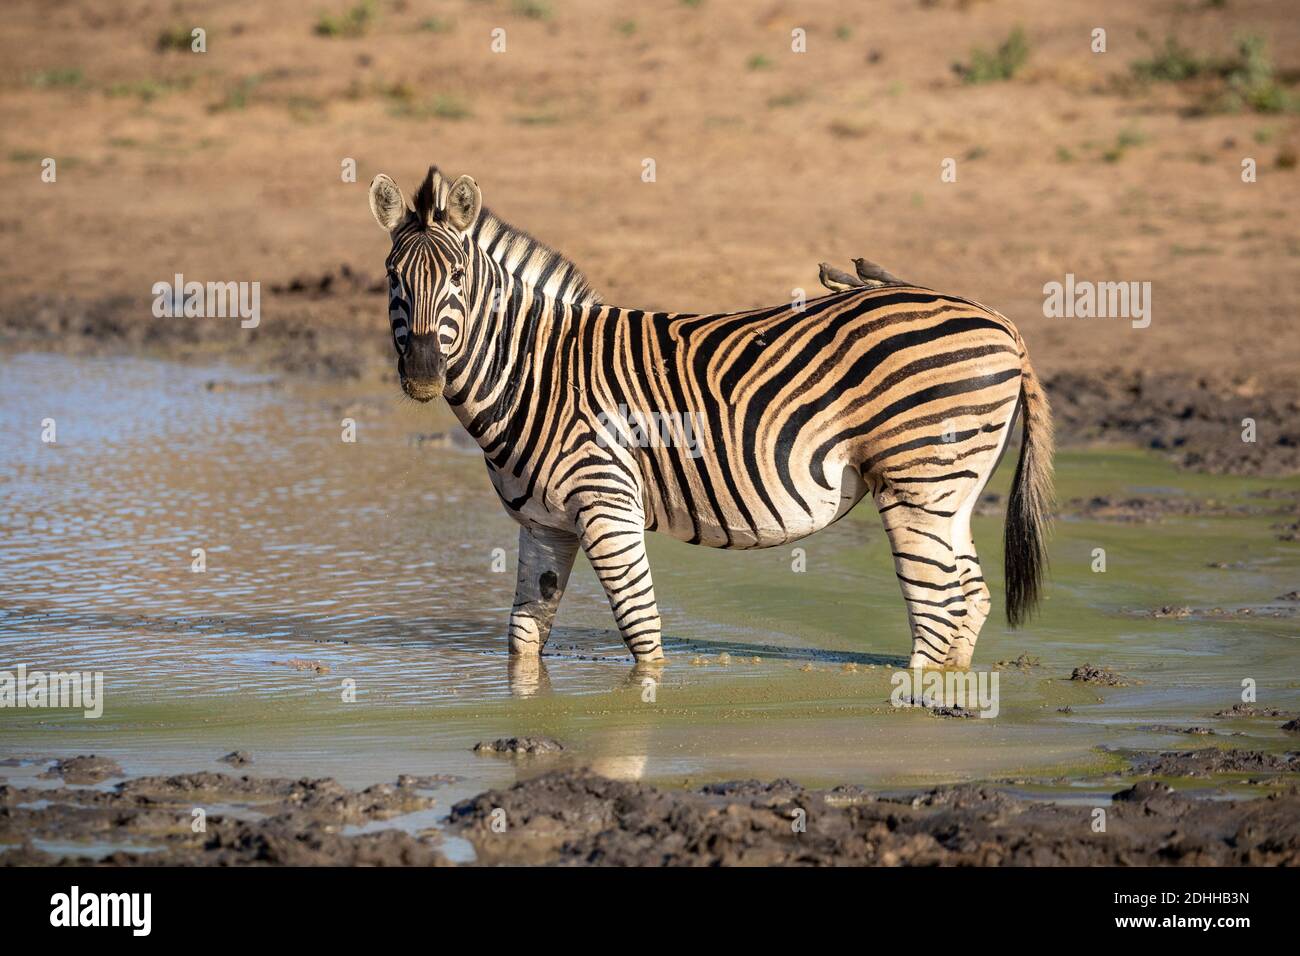 Cebra adulta de pie en agua turbia que parece alerta en Kruger Parque Nacional en Sudáfrica Foto de stock